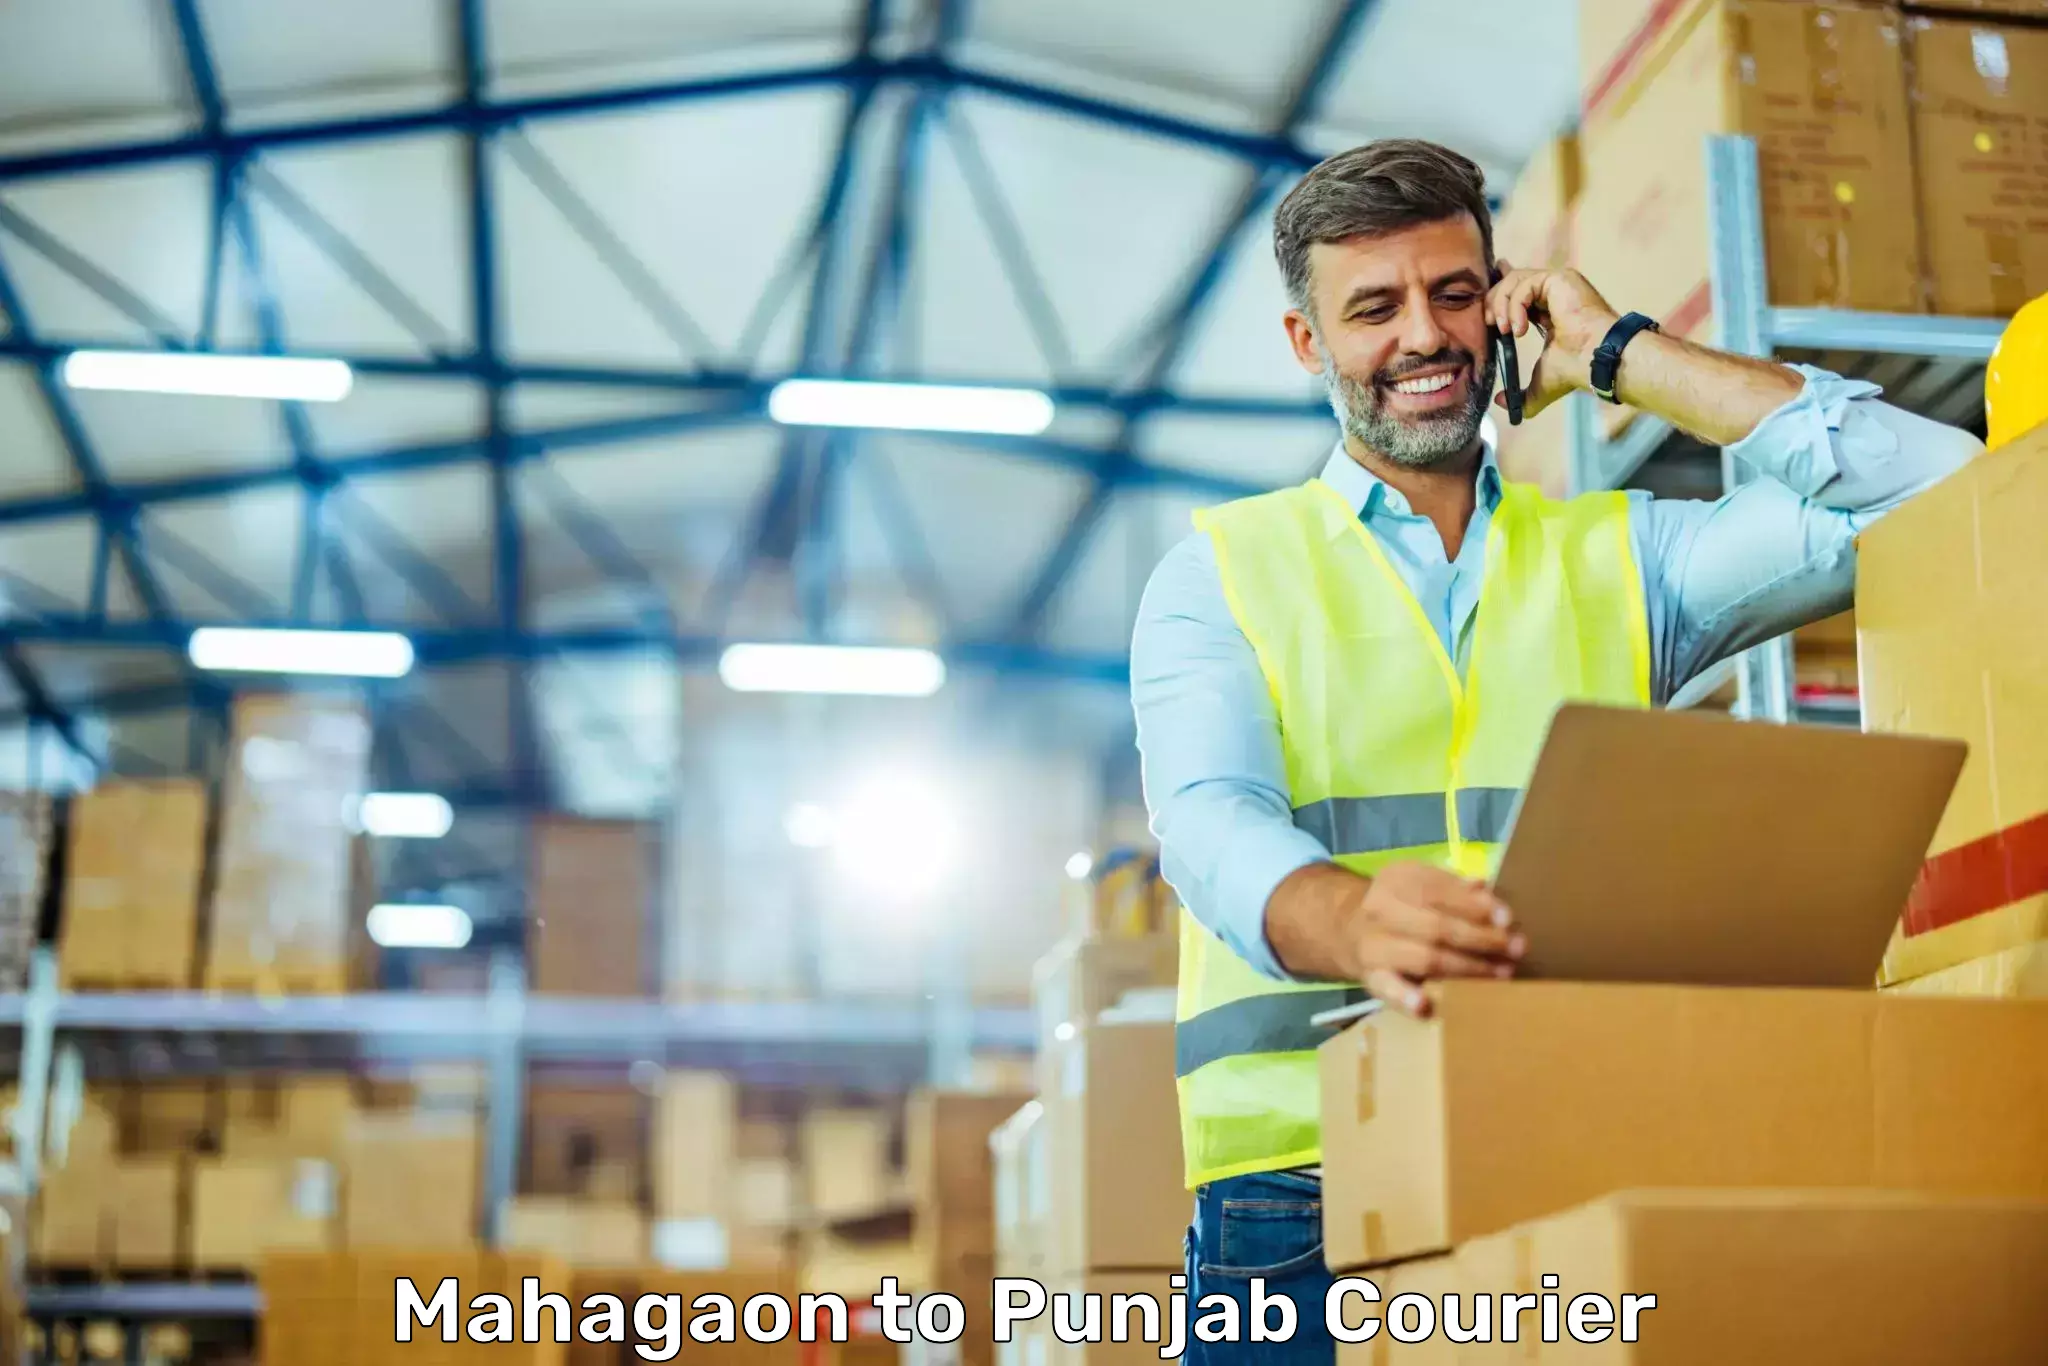 Customized shipping options Mahagaon to Mandi Gobindgarh